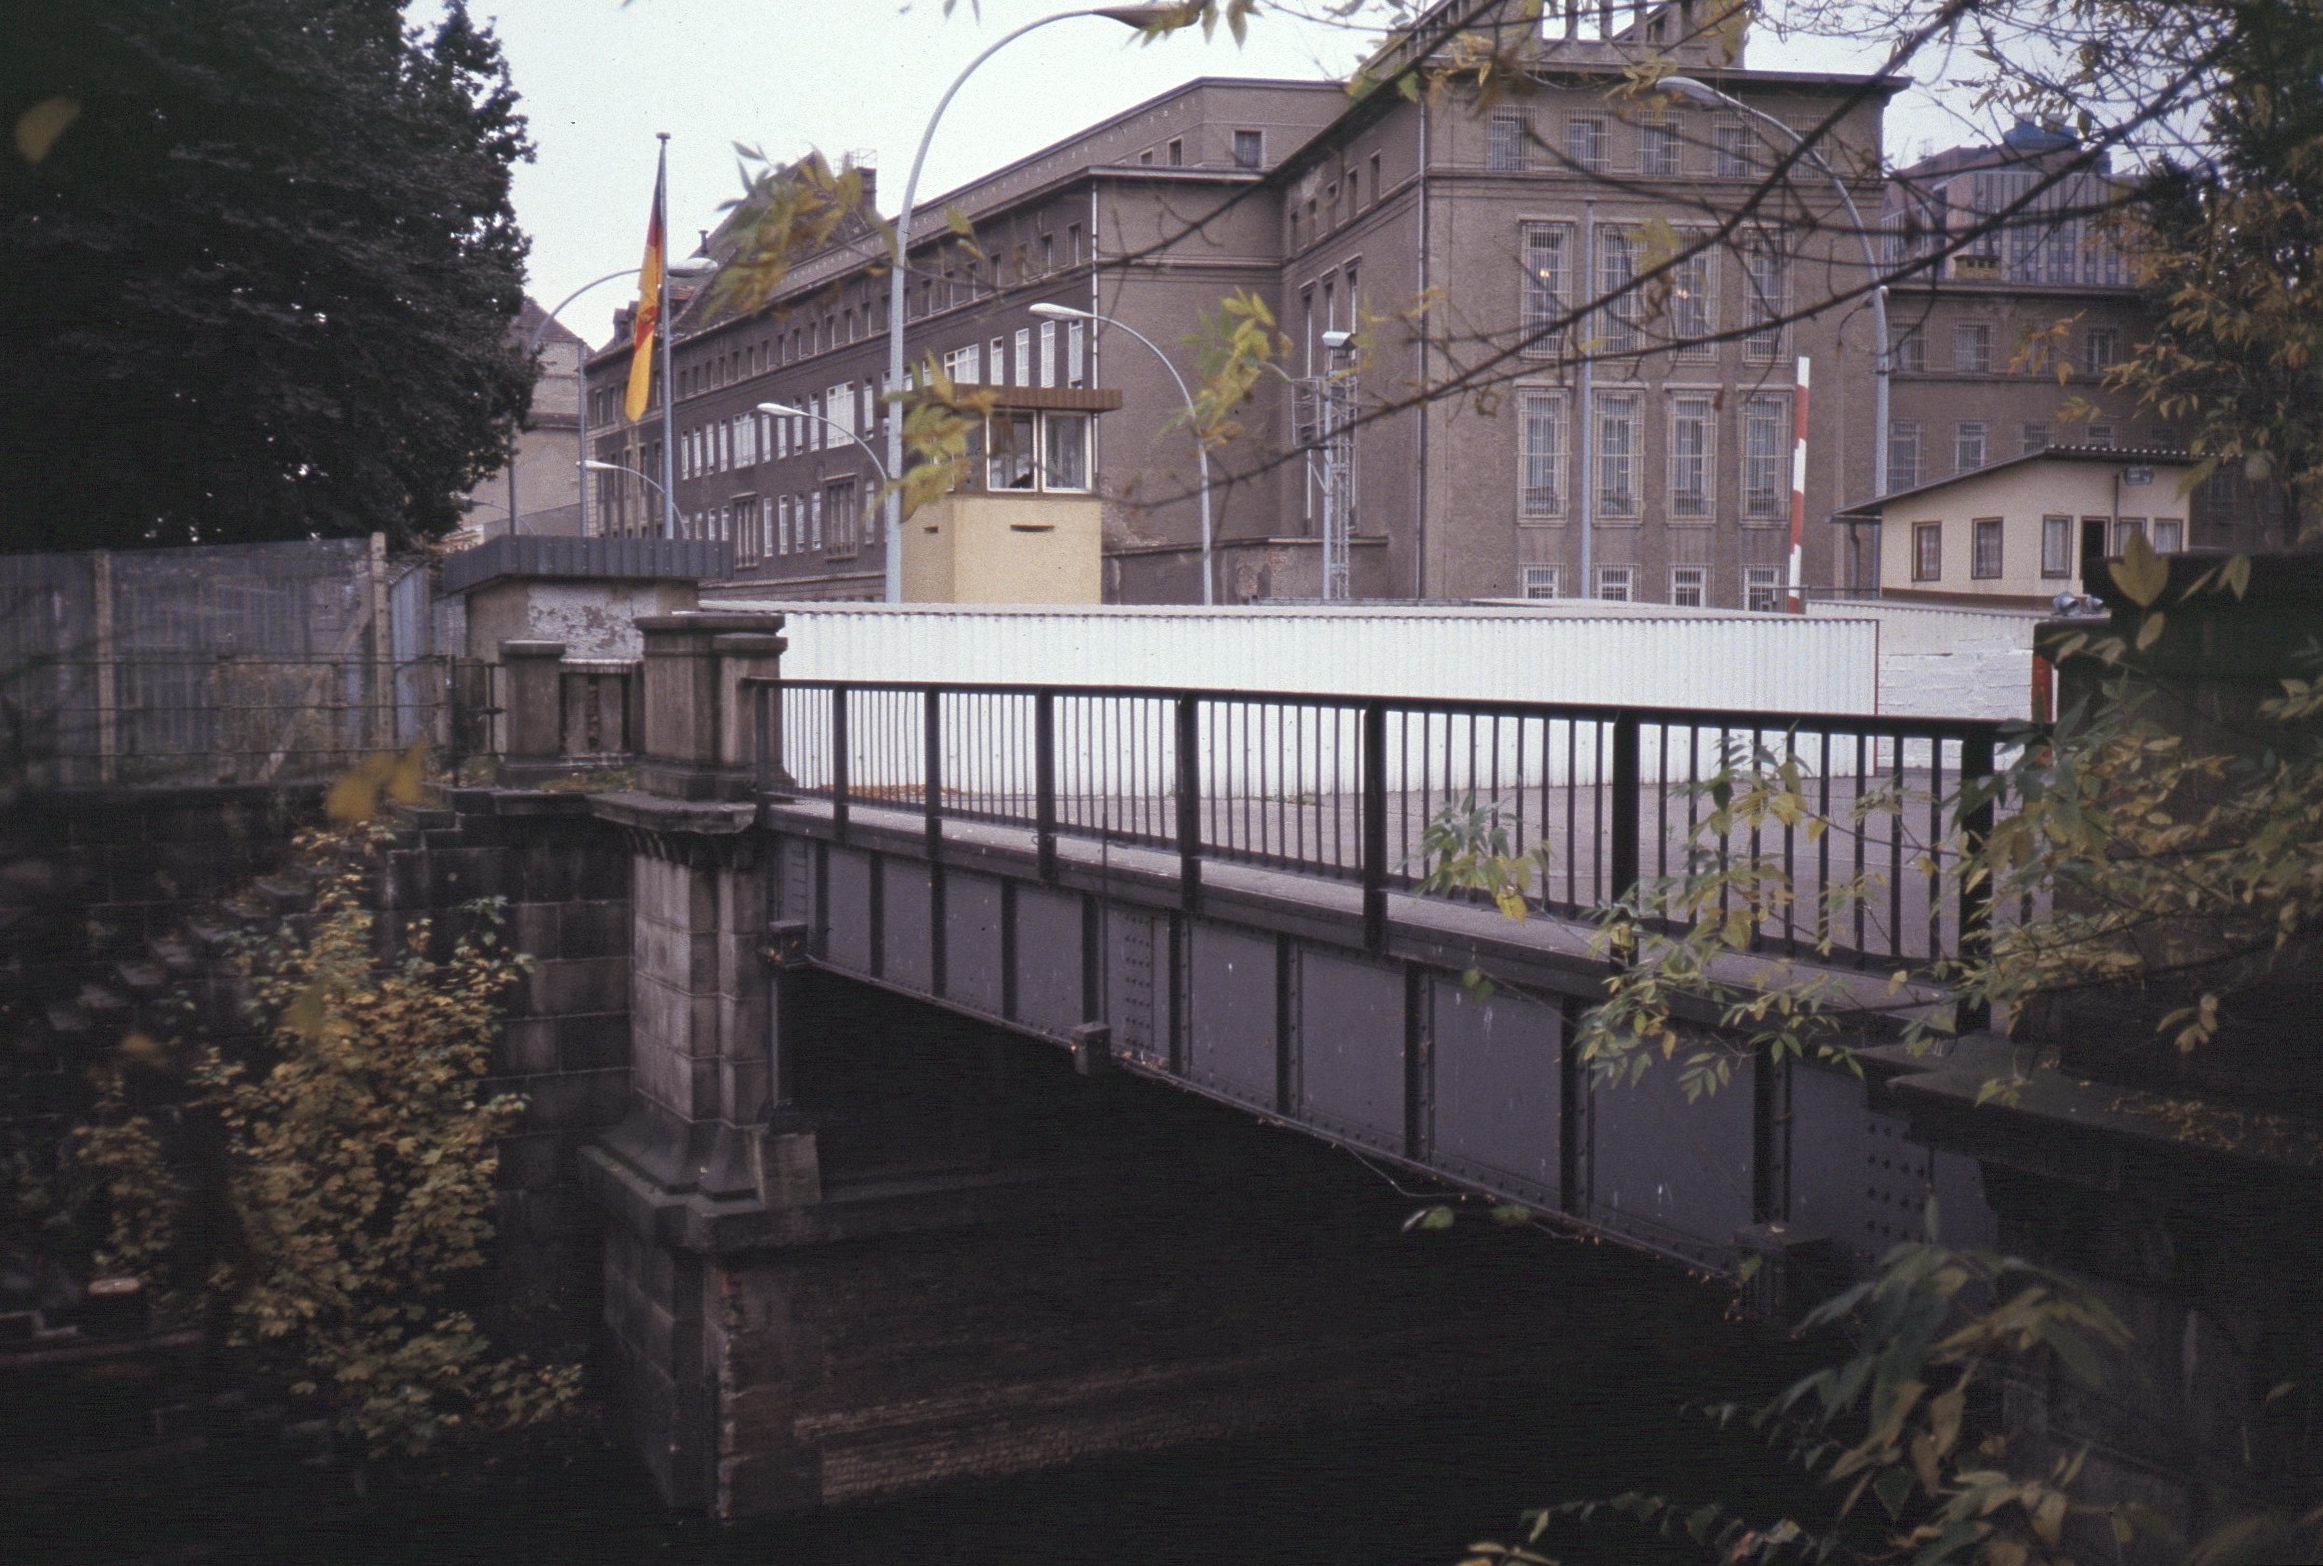 a bridge over a bridge